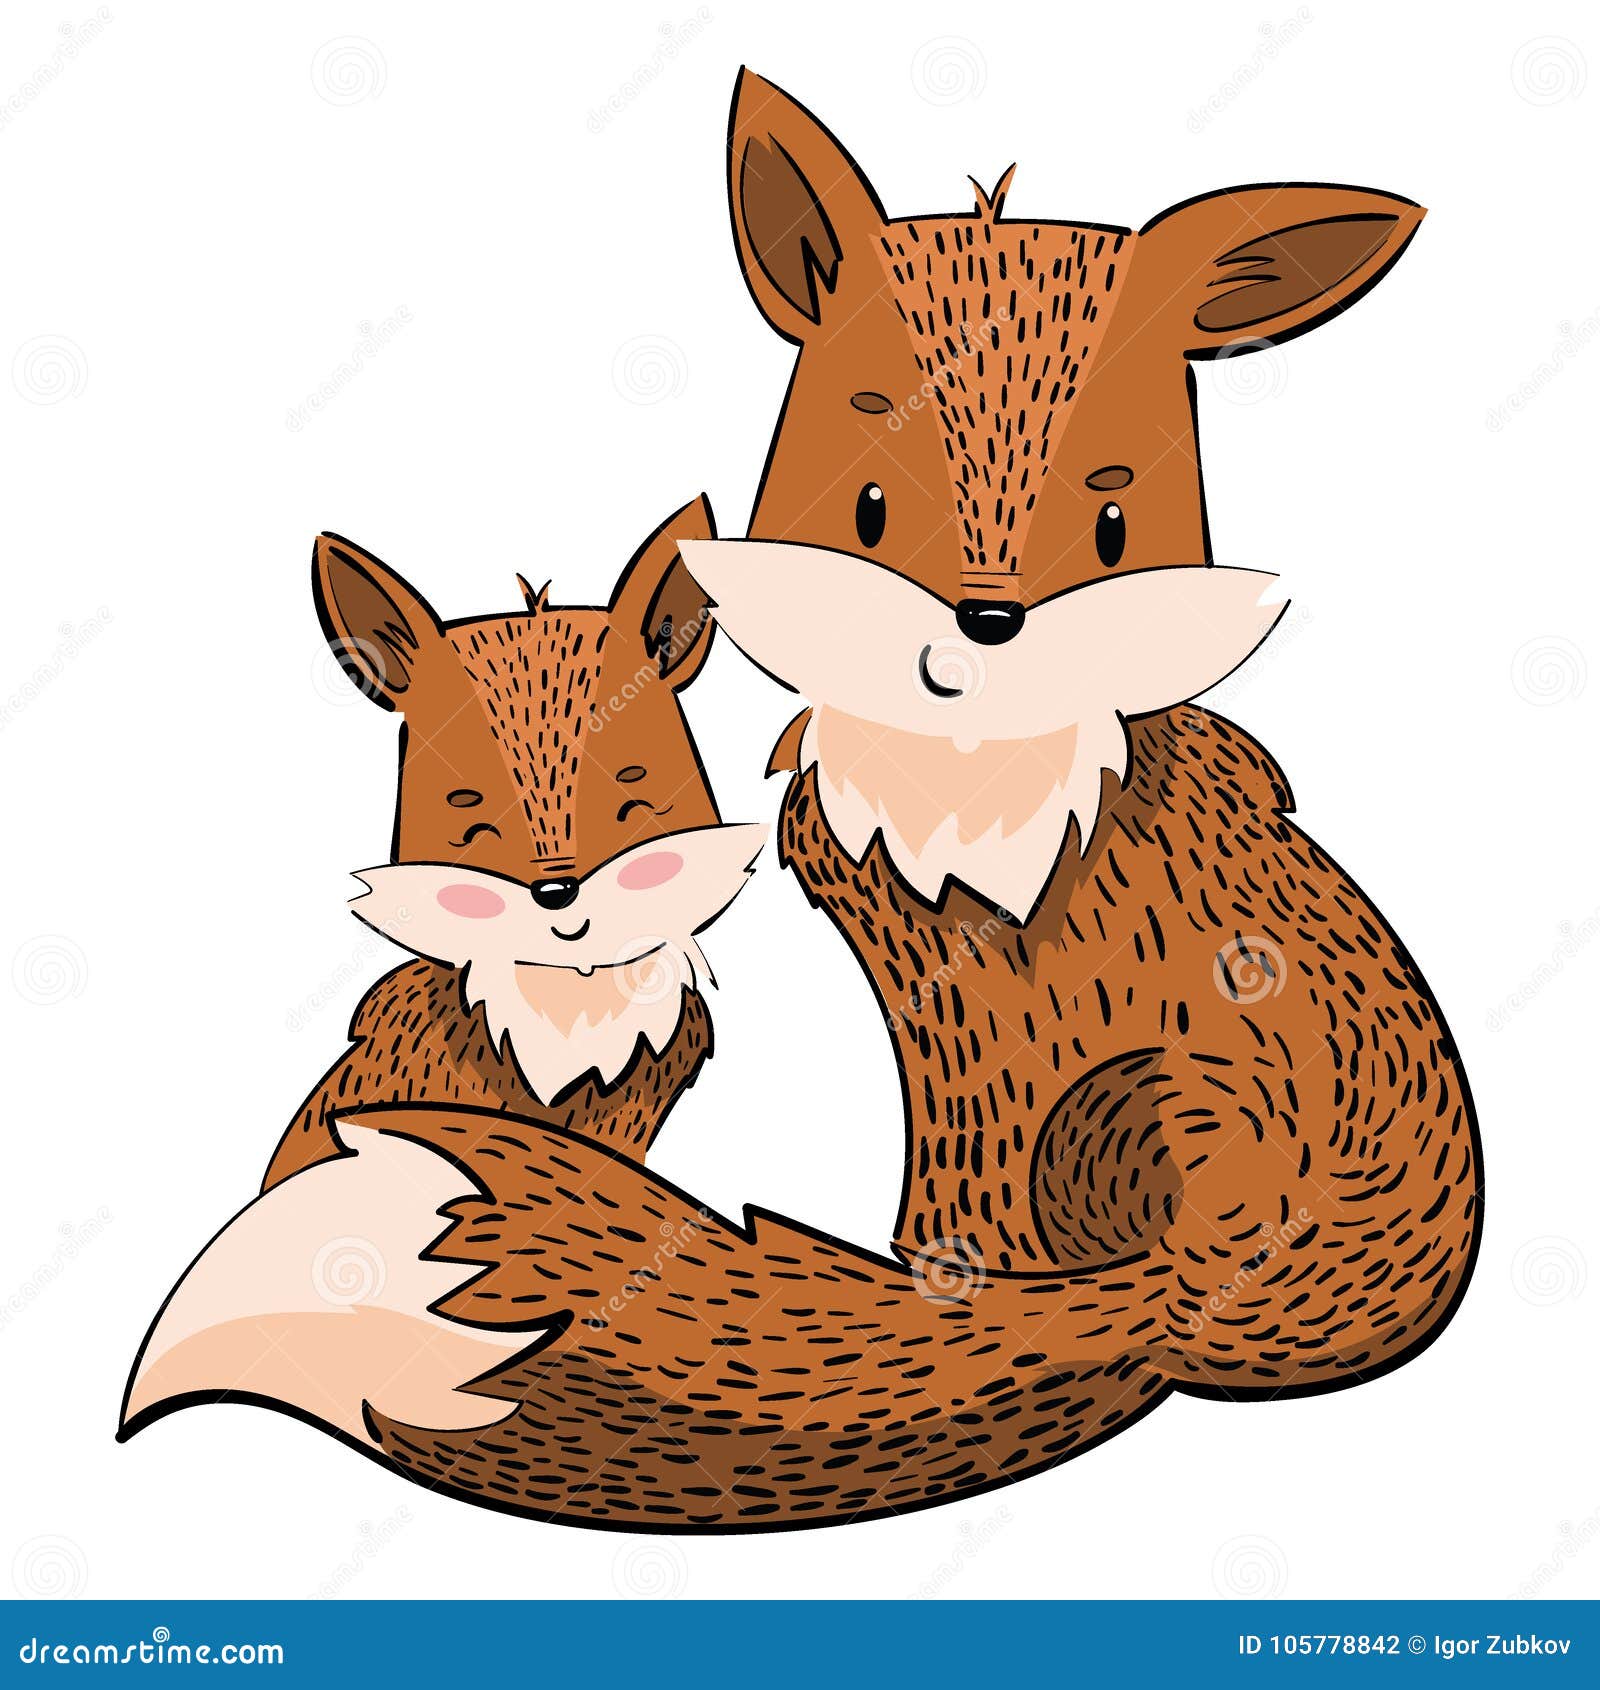 Desenho de raposa  Raposas desenho, Desenho, Raposa